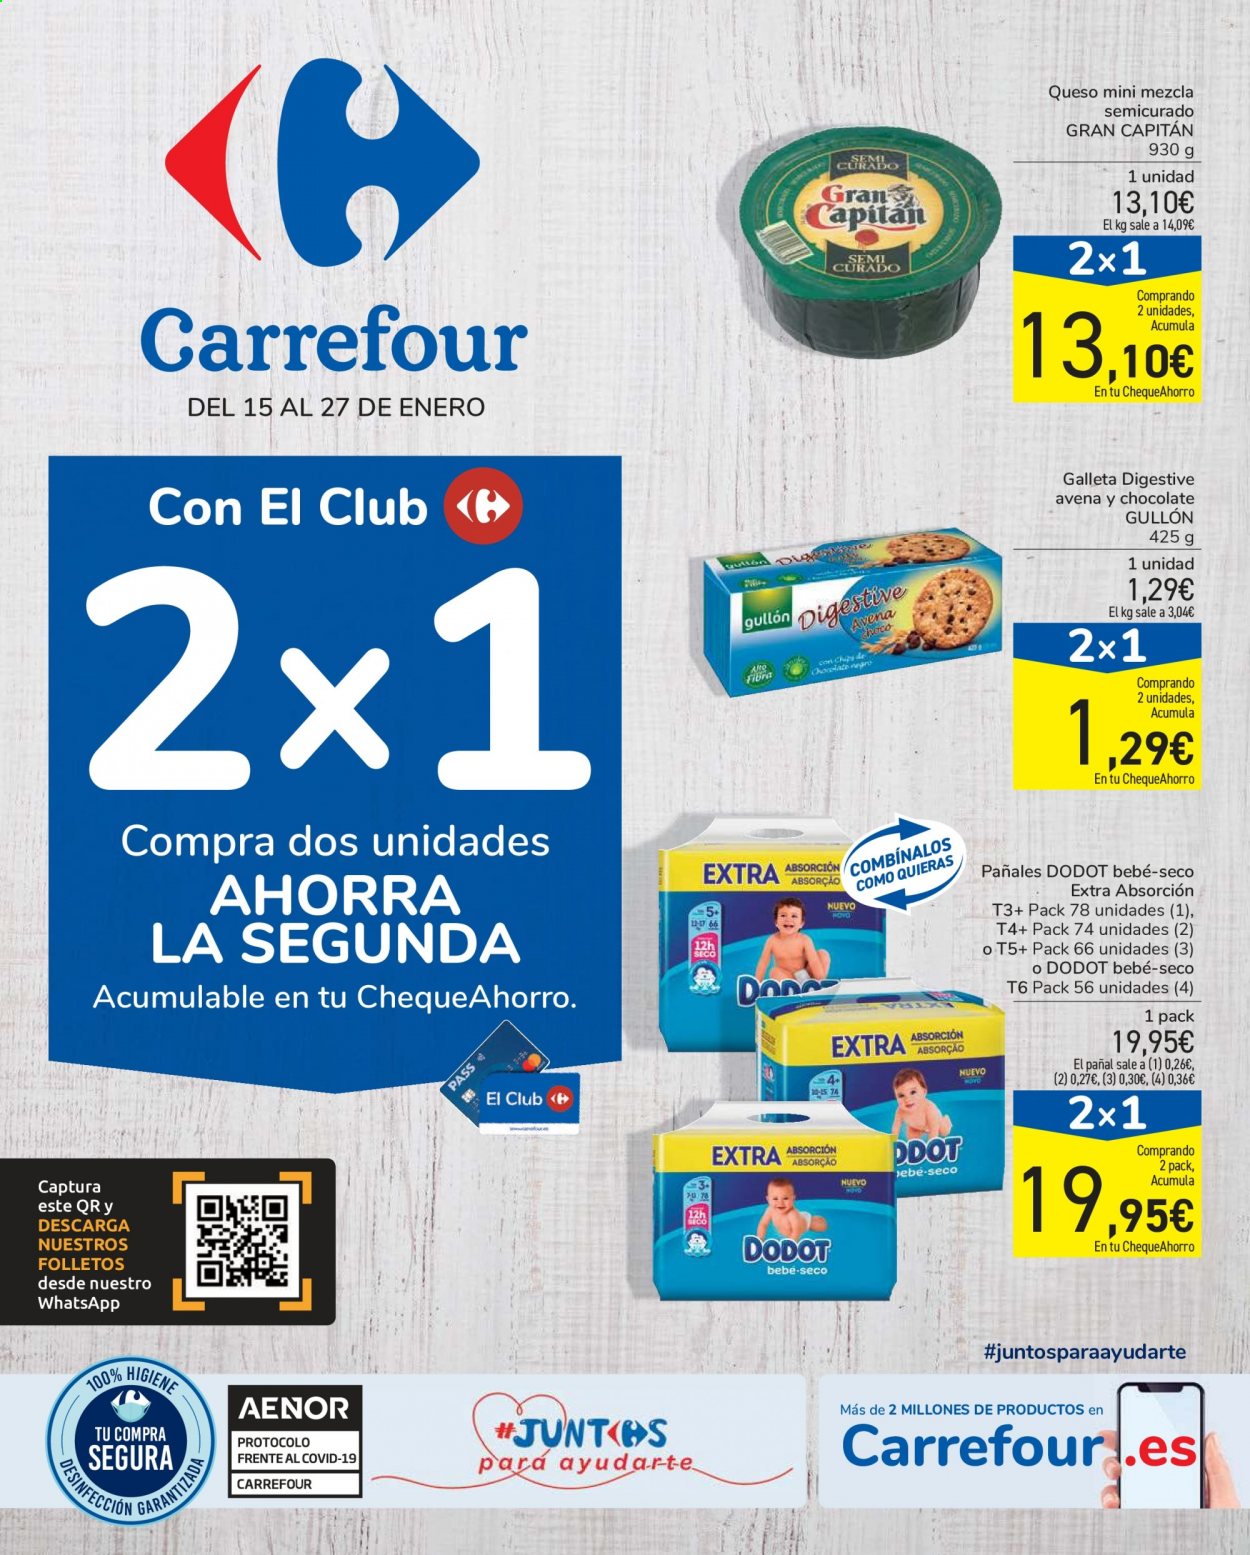 thumbnail - Folleto actual Carrefour - 15/01/21 - 27/01/21 - Ventas - Gullón, queso, galletas, digestive, Dodot. Página 1.